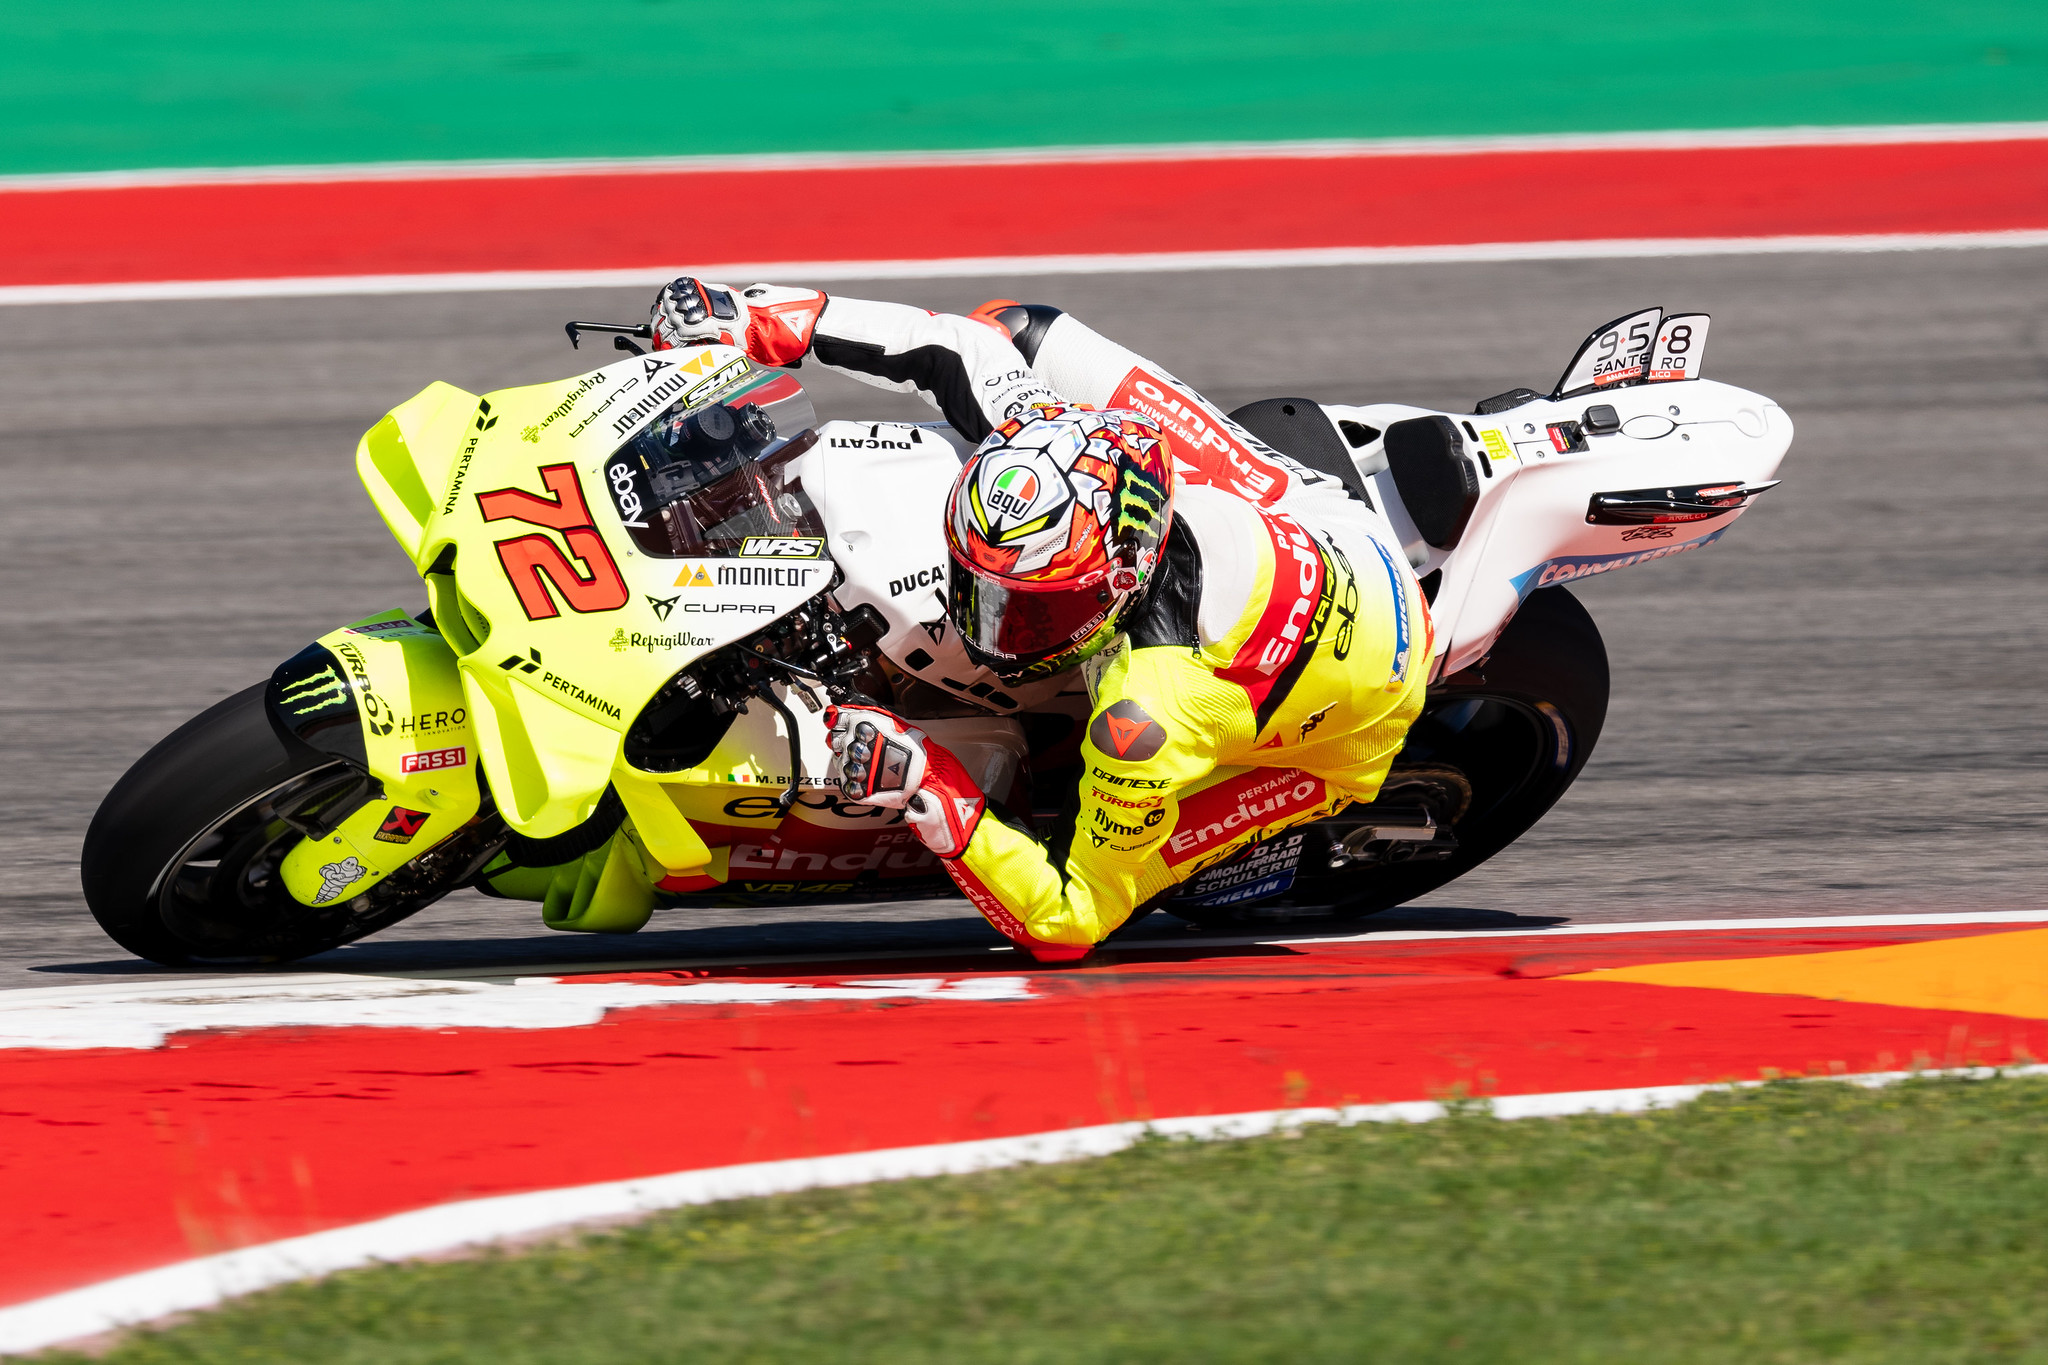 #72 Marco Bezzecchi - (ITA) - Pertamina Enduro VR46 MotoGP™ Team - Ducati Desmosedici GP23